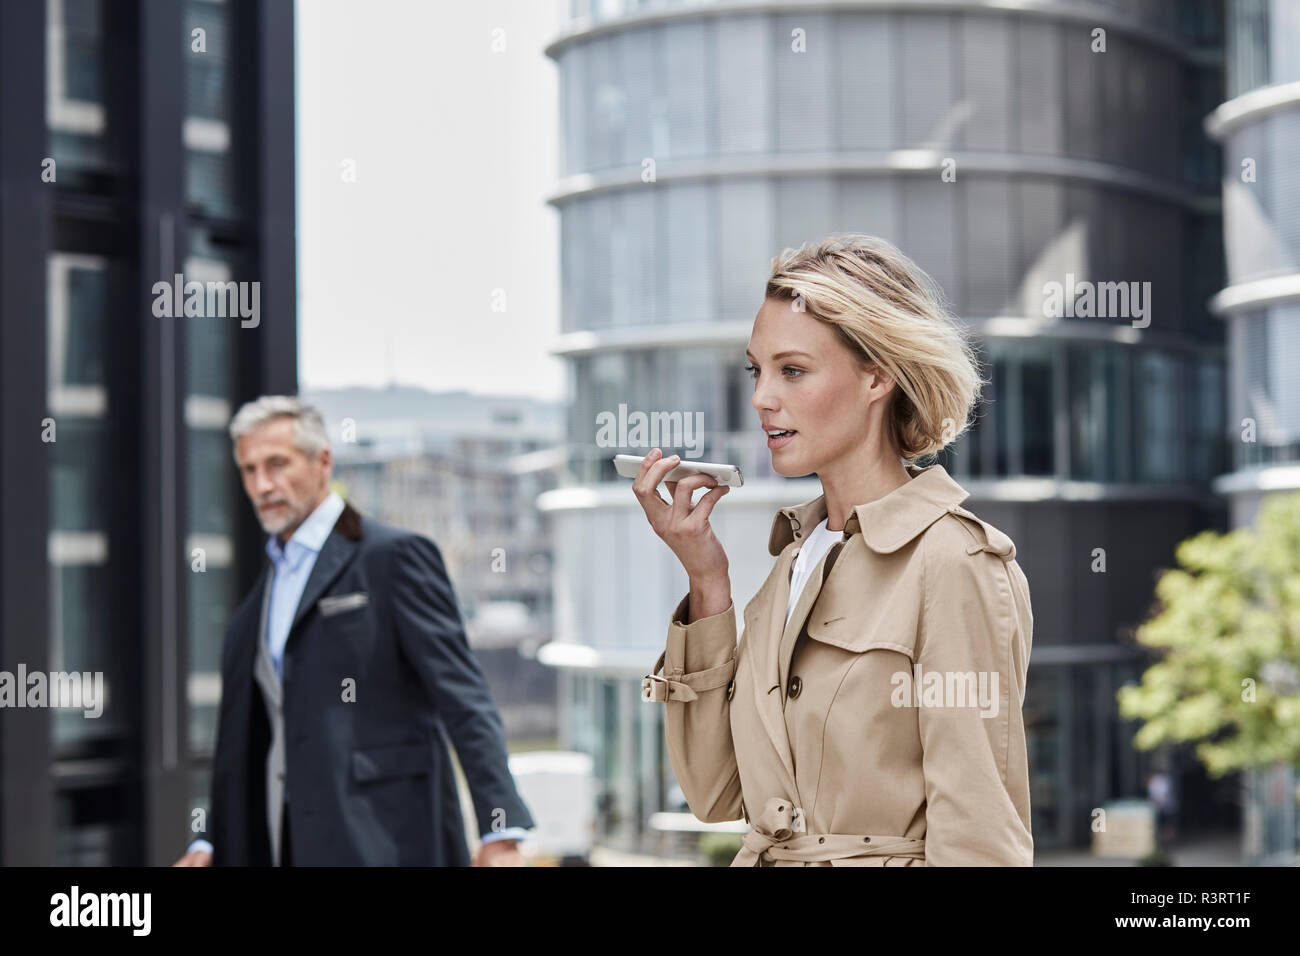 Deutschland, Duesseldorf, Porträt des Blonden Geschäftsfrau tragen beige trenchcoat Gespräch am Handy Stockfoto